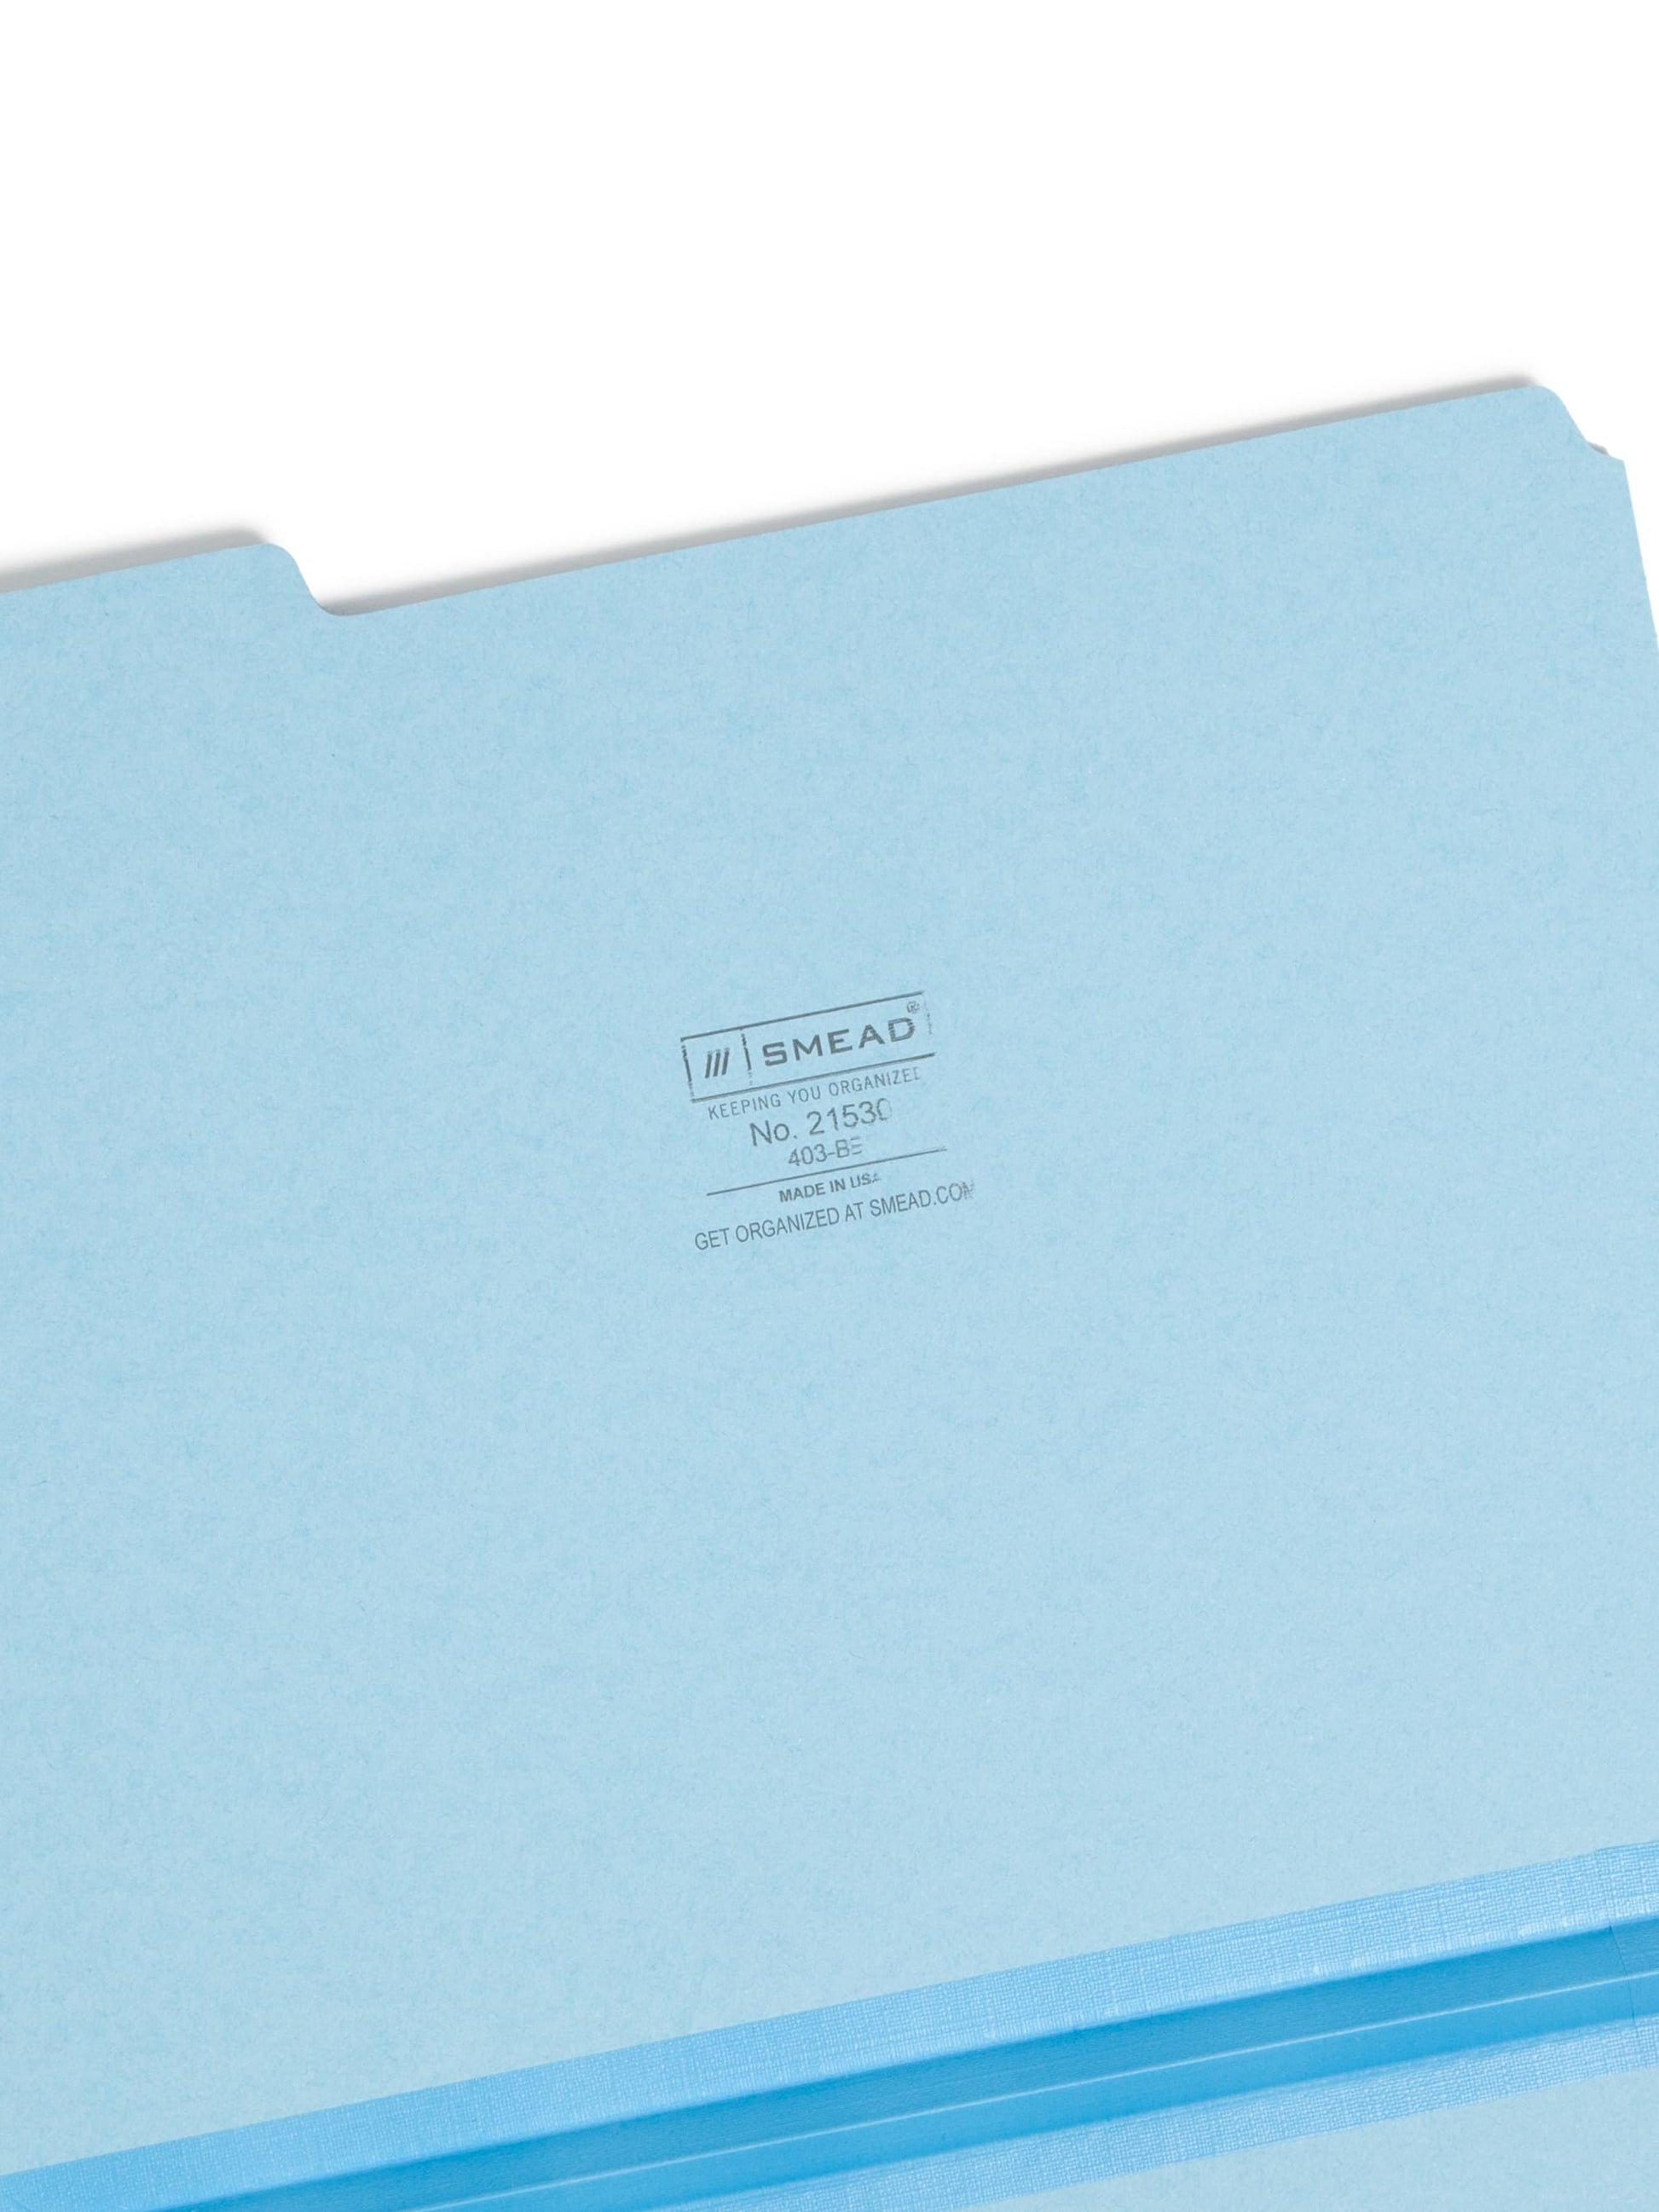 Pressboard File Folder, 1 inch Expansion, 1/3-Cut Tab, Blue Color, Letter Size, Set of 25, 086486215305